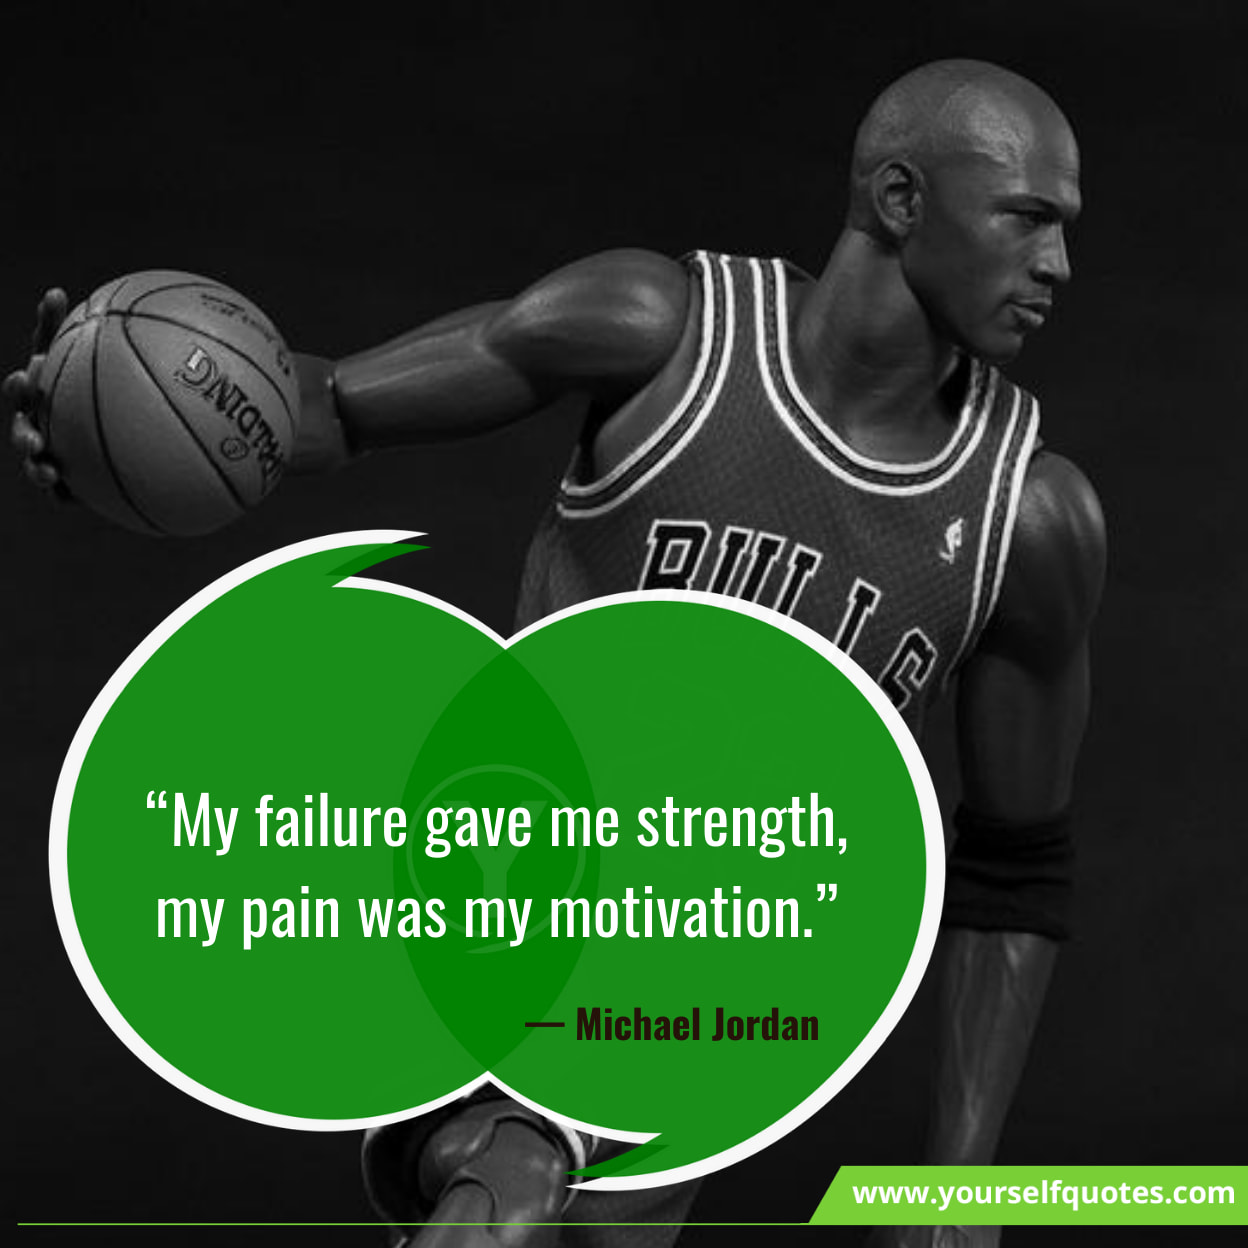 Michael Jordan Quotes About Secrets Of Massive Success! - Immense ...